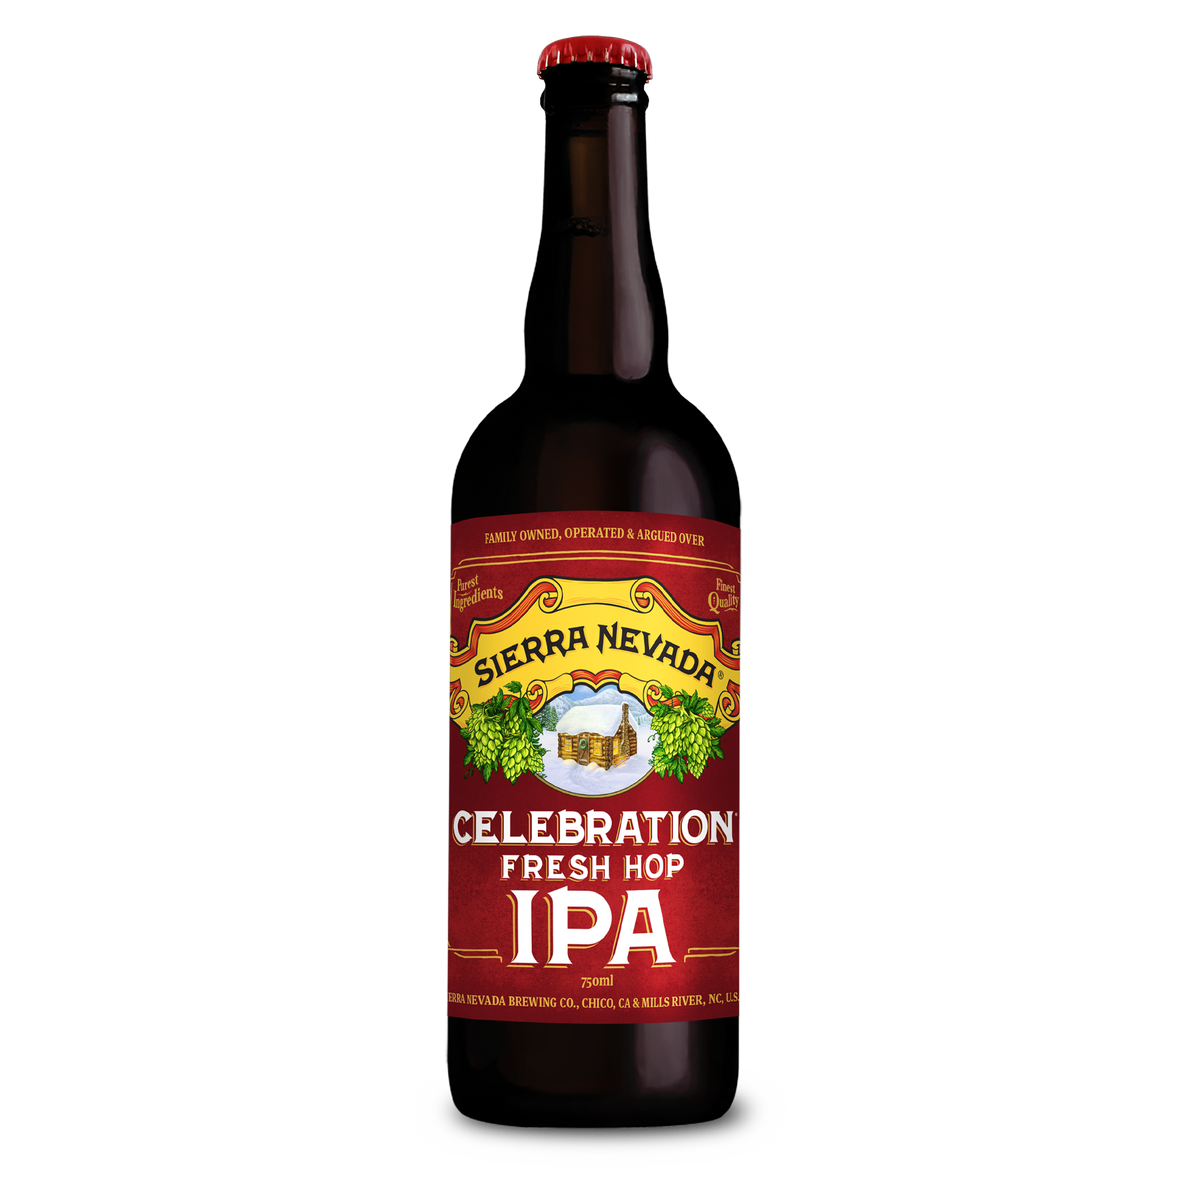 Sierra Nevada Brewing Co. Celebration Fresh Hop IPA 750 ml bottle